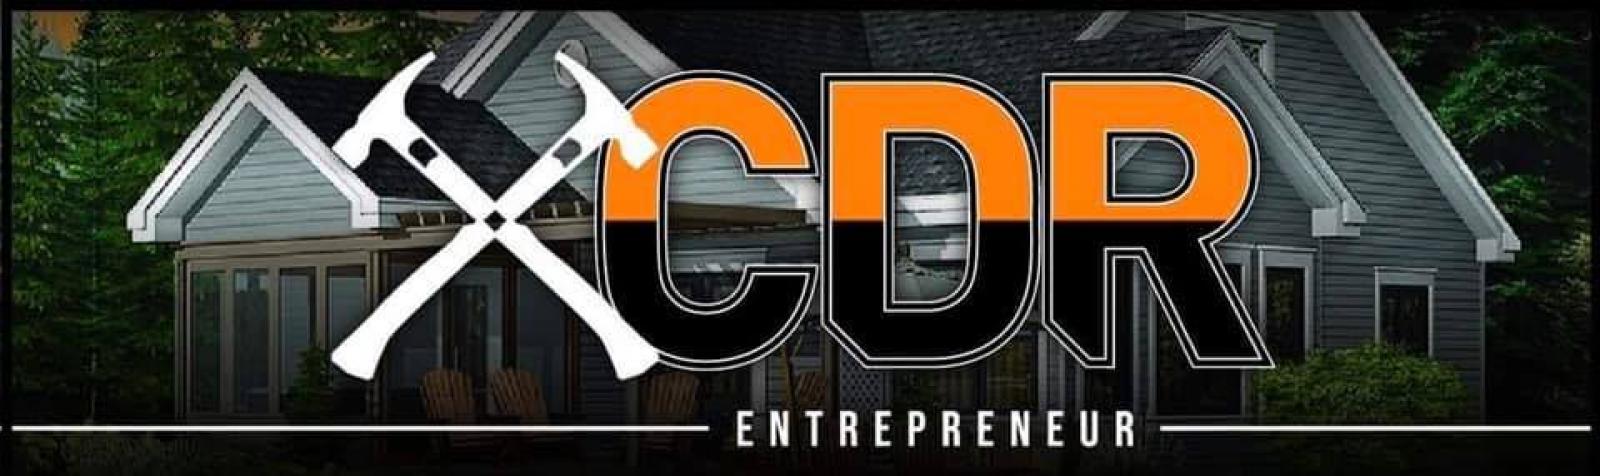 Entrepreneur CDR inc. Logo